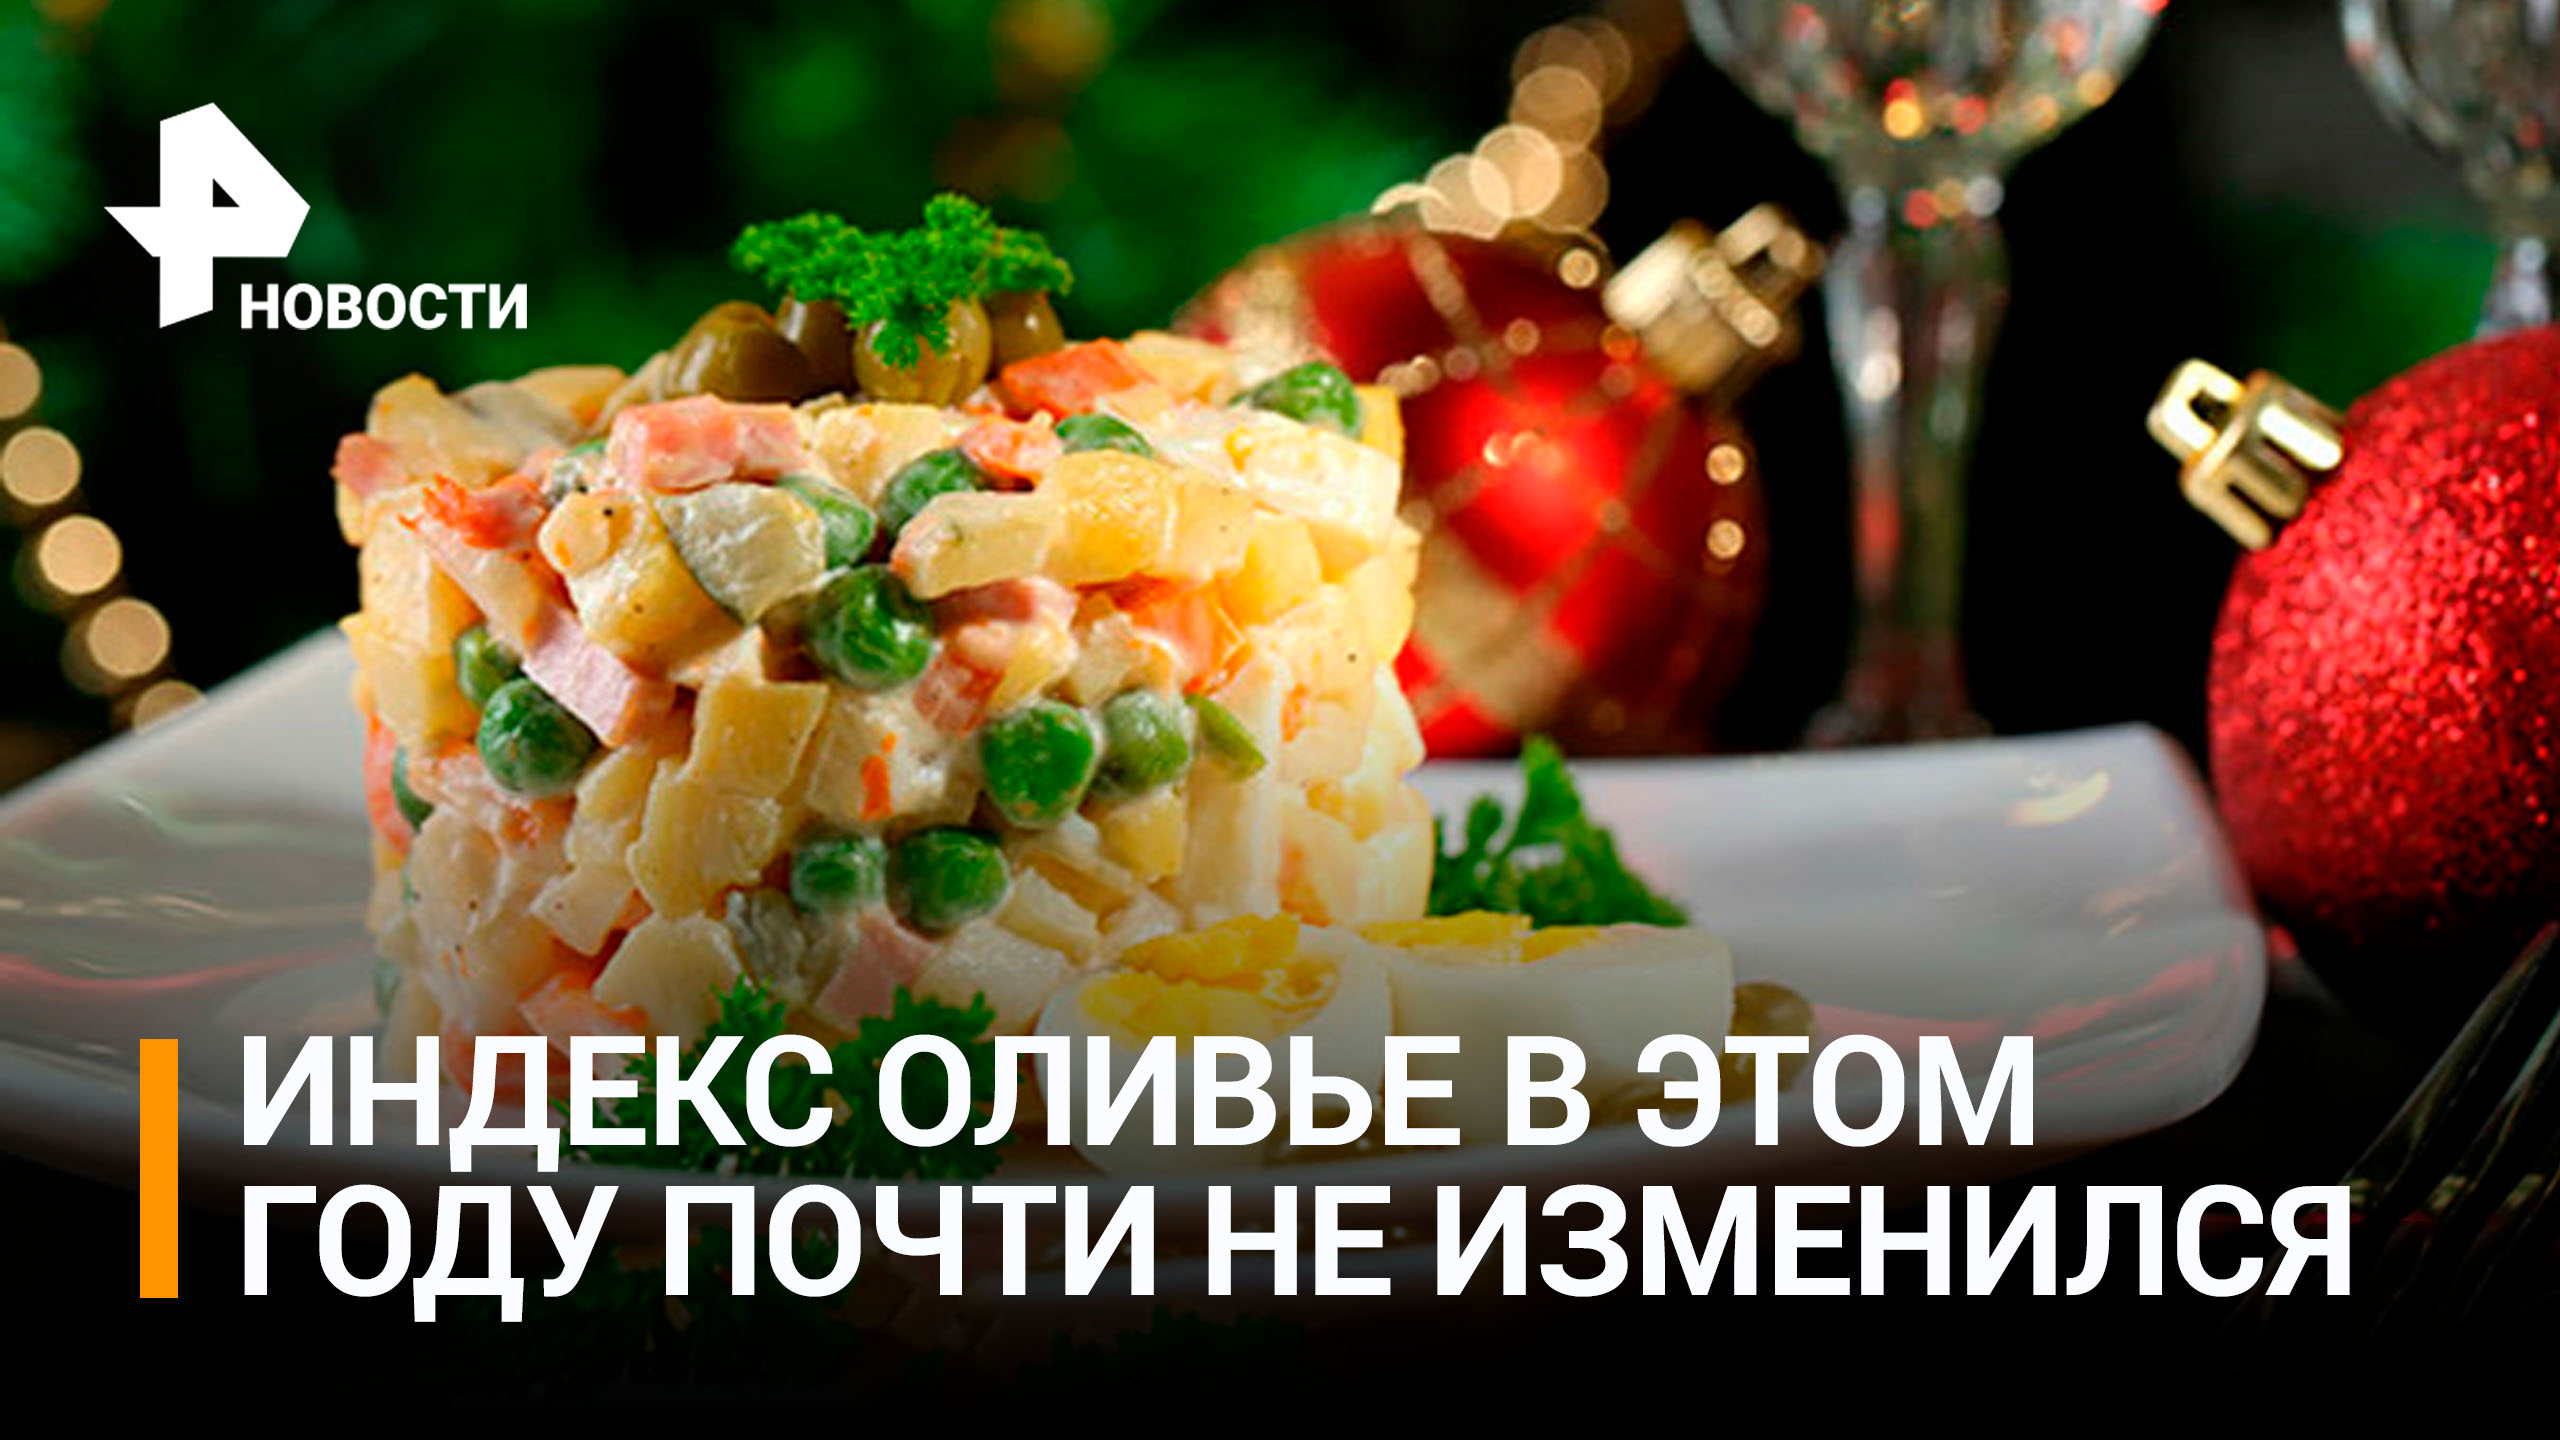 Новогодний салат оливье подешевел впервые за несколько лет / РЕН Новости